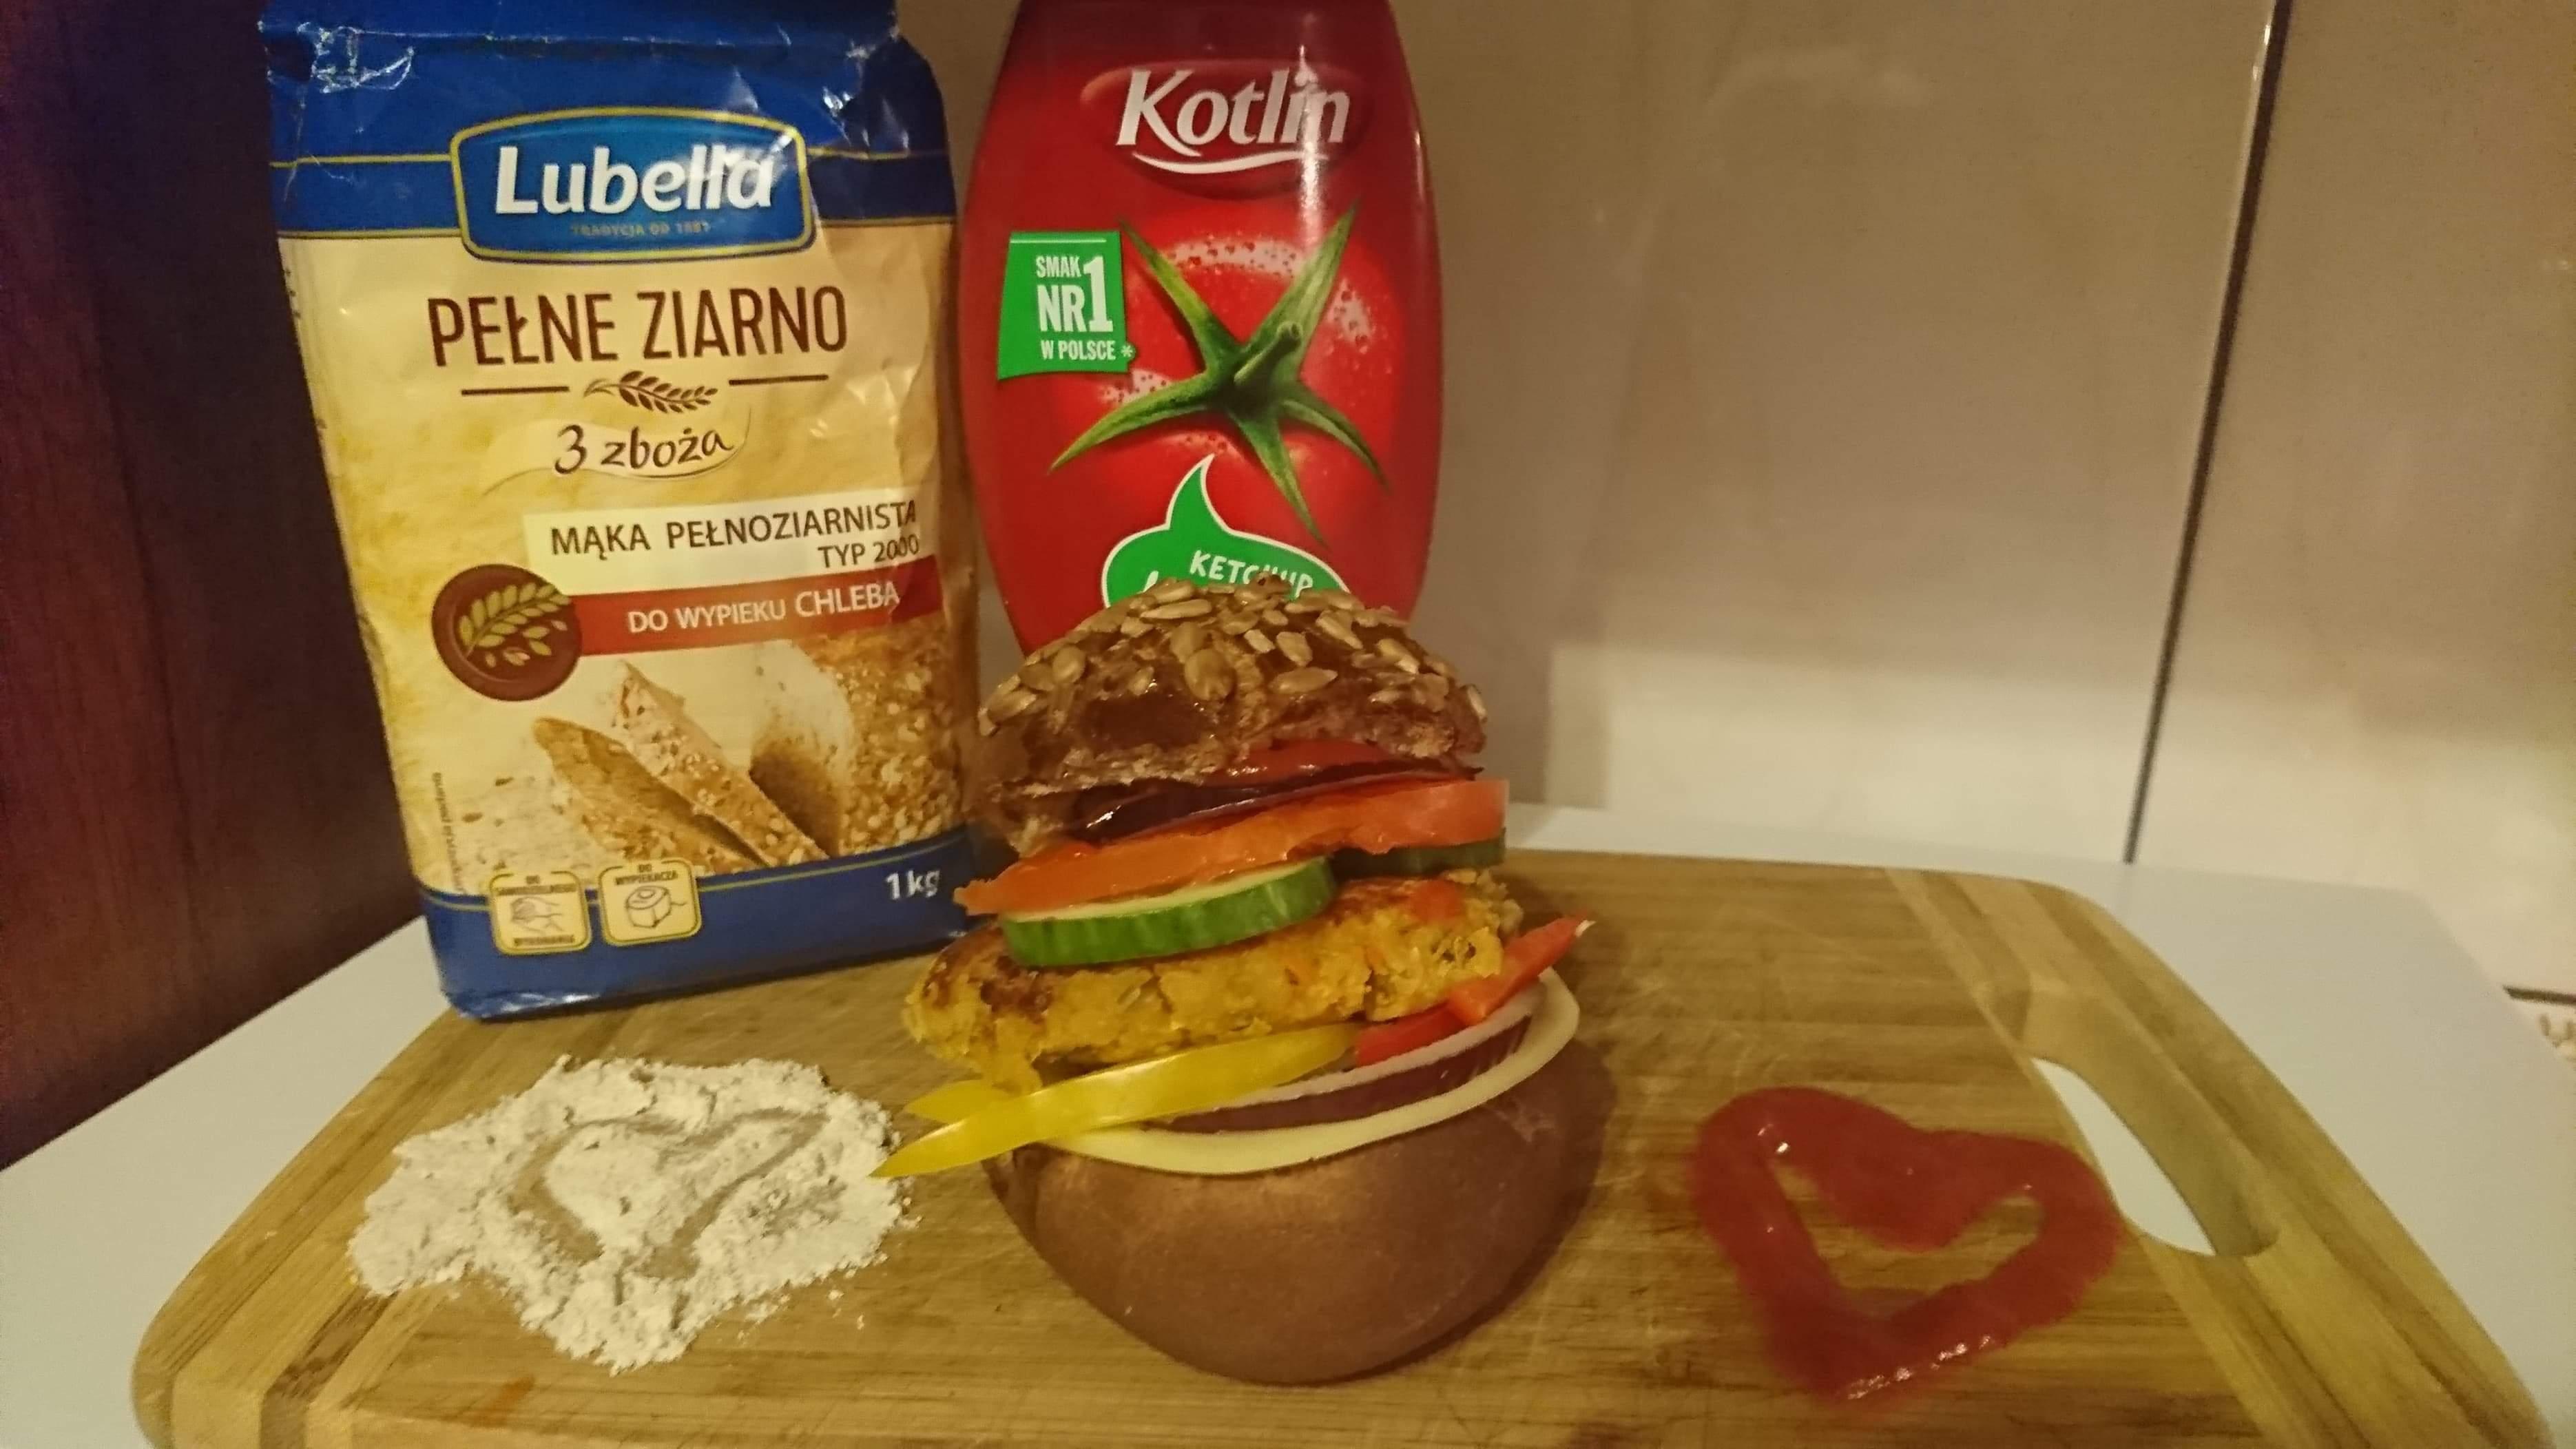 Król soczewicy- czyli zdrowy i pyszny burger